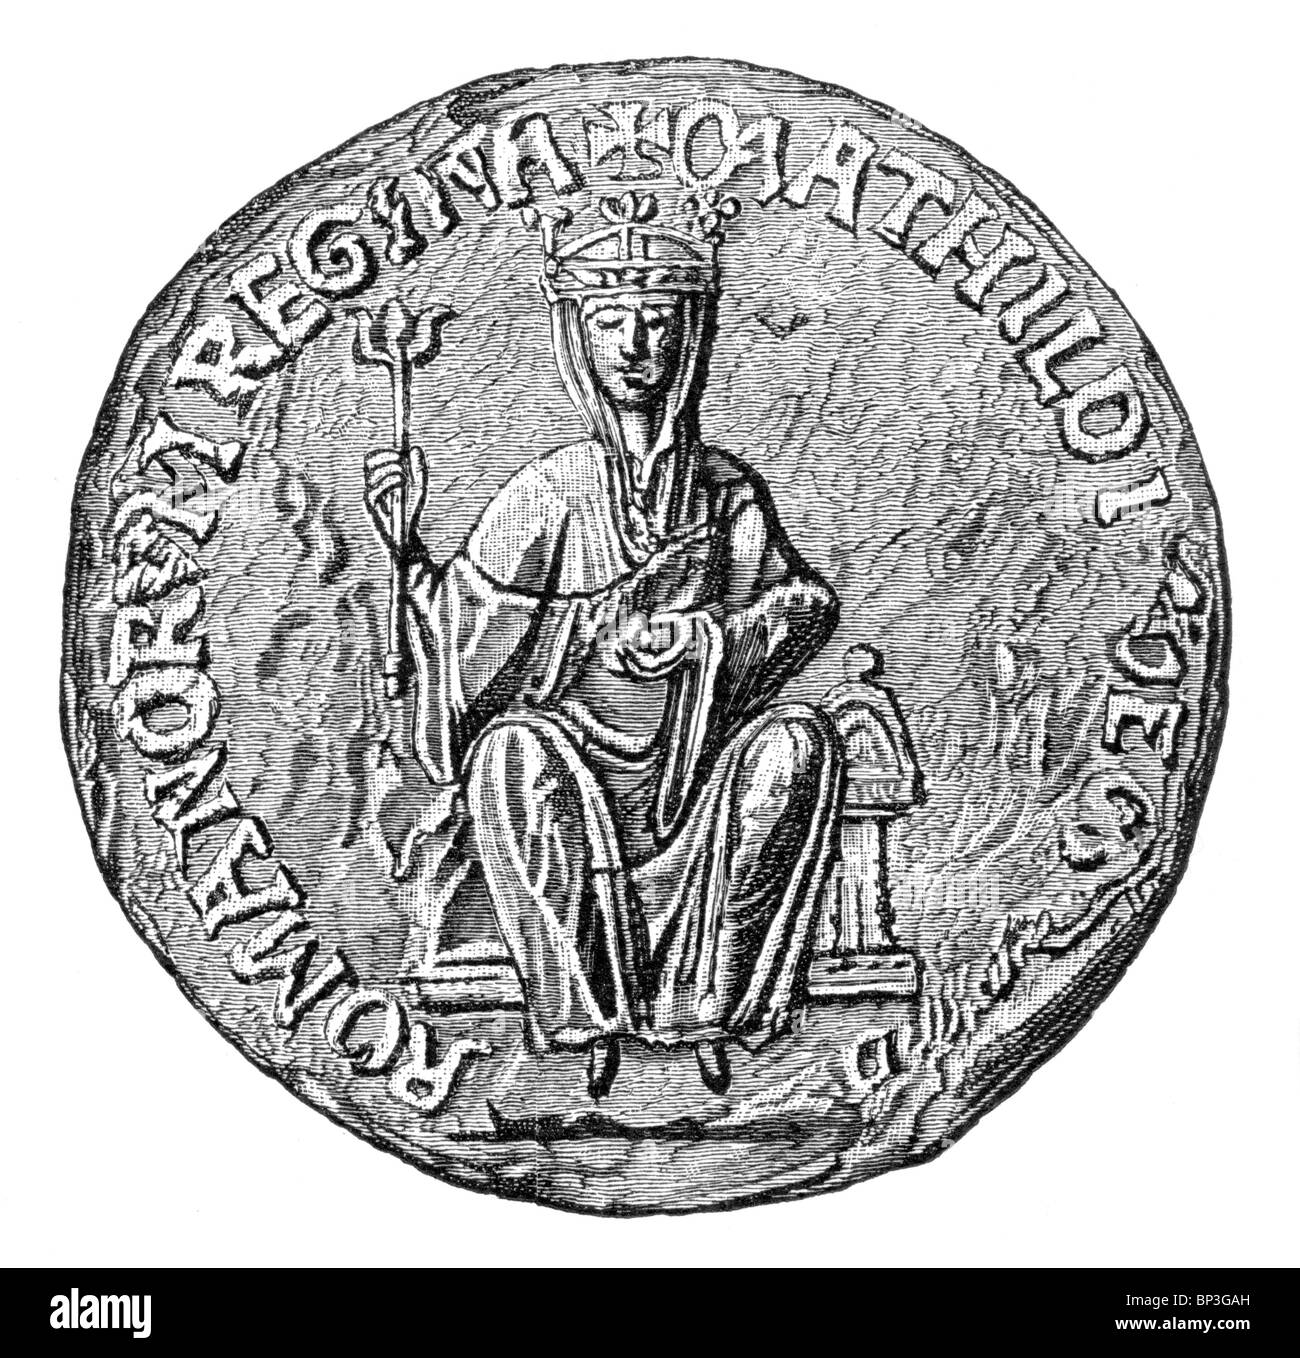 Ilustración en blanco y negro; El Gran Sello de la Emperatriz Matilda, hija de Enrique I de Inglaterra y esposa de Geoffrey Plantagenet Foto de stock